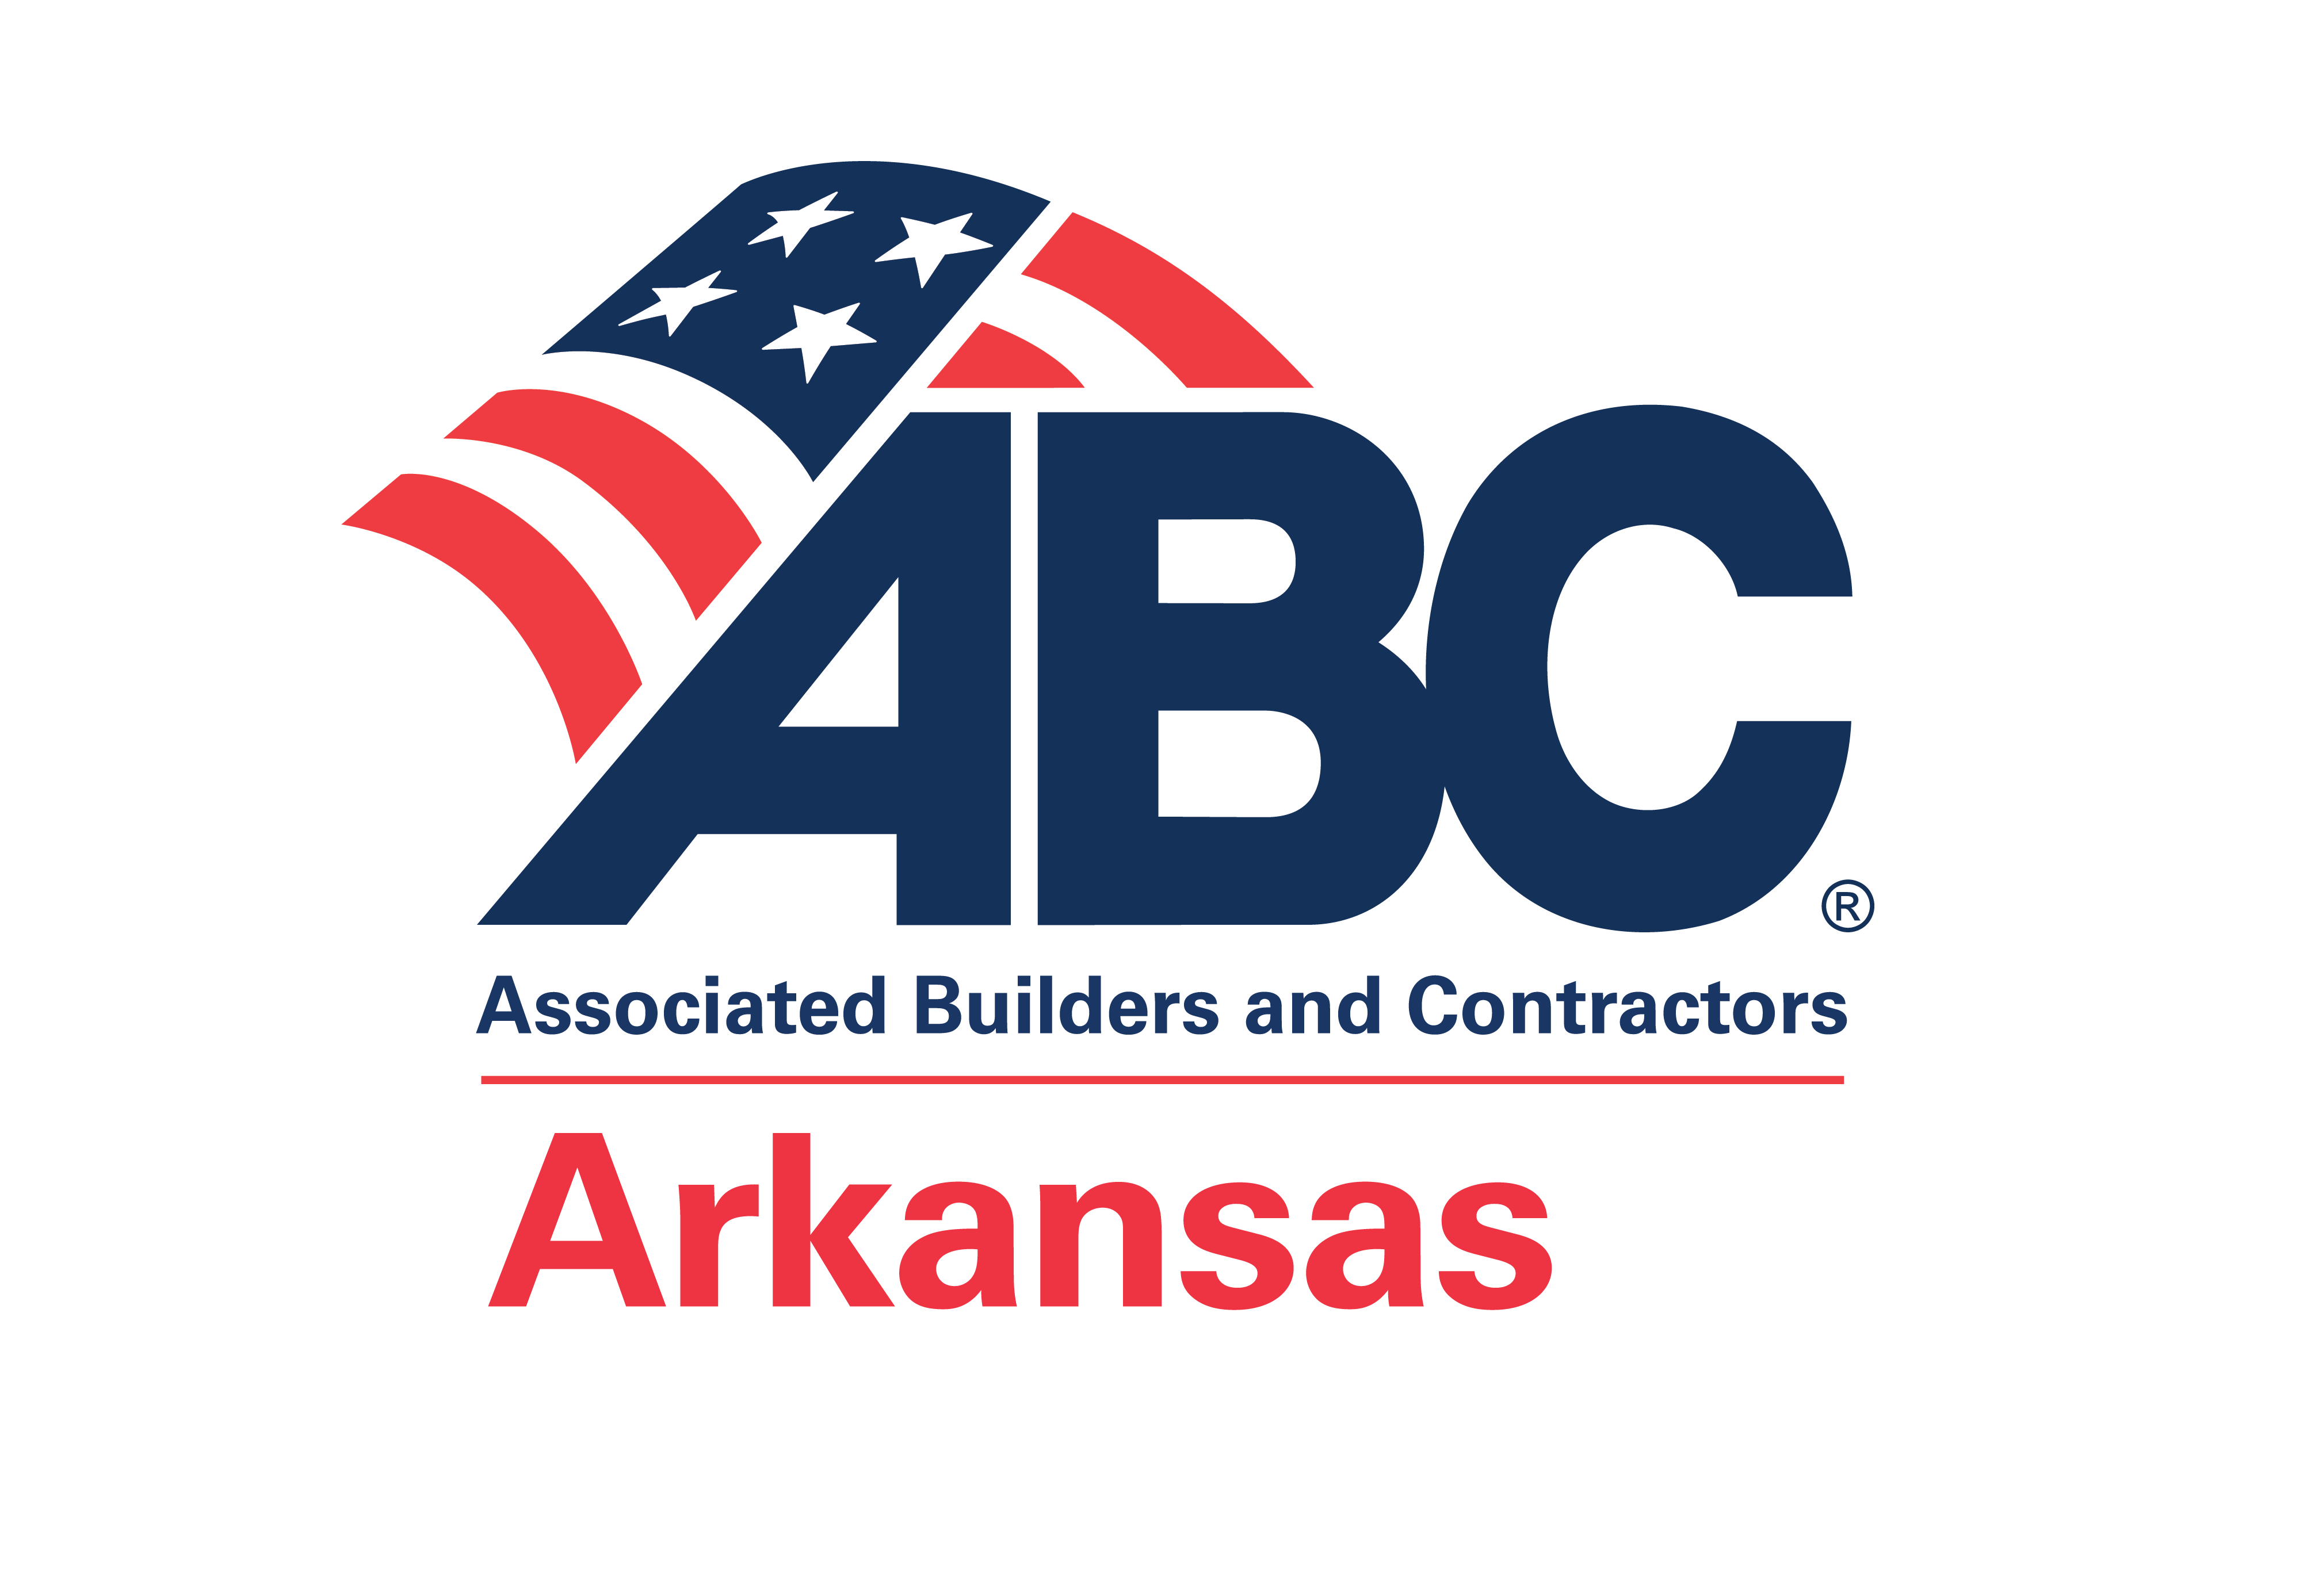 ABC Arkansas